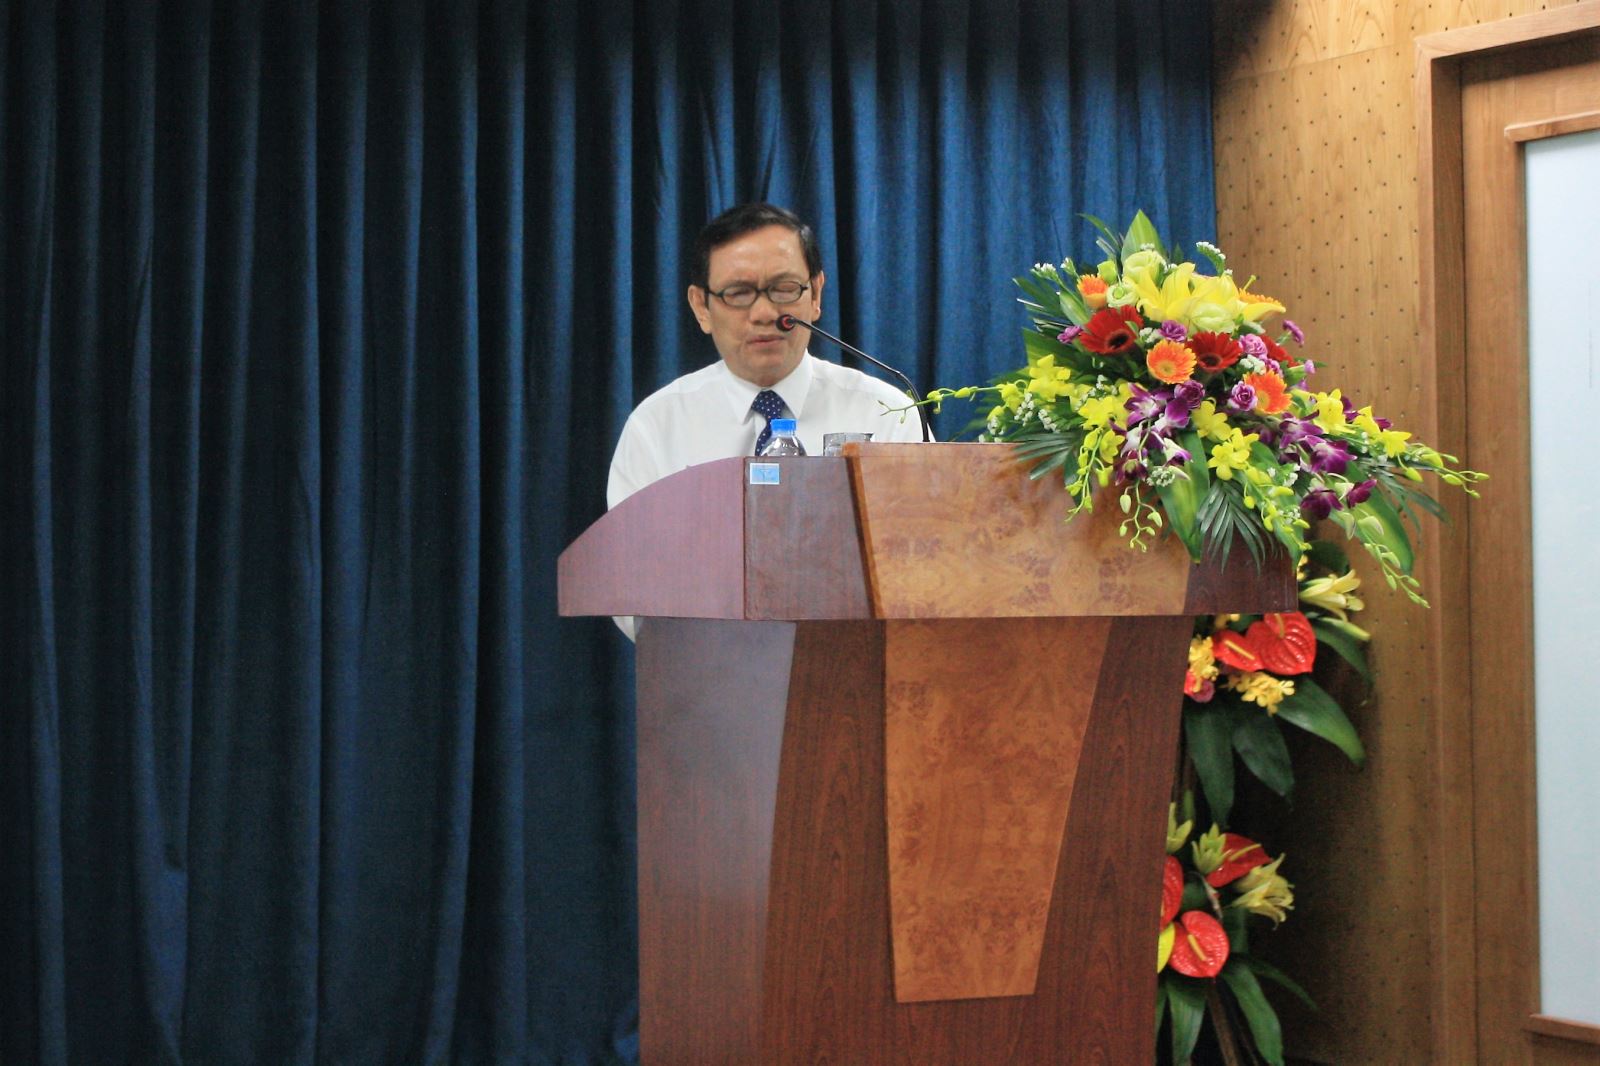 Ông Huỳnh Bá Vân - Phó Chủ tịch HĐQT kiêm Giám đốc Công ty trình bày tờ trình không tiếp tục tái cấu trúc Công ty